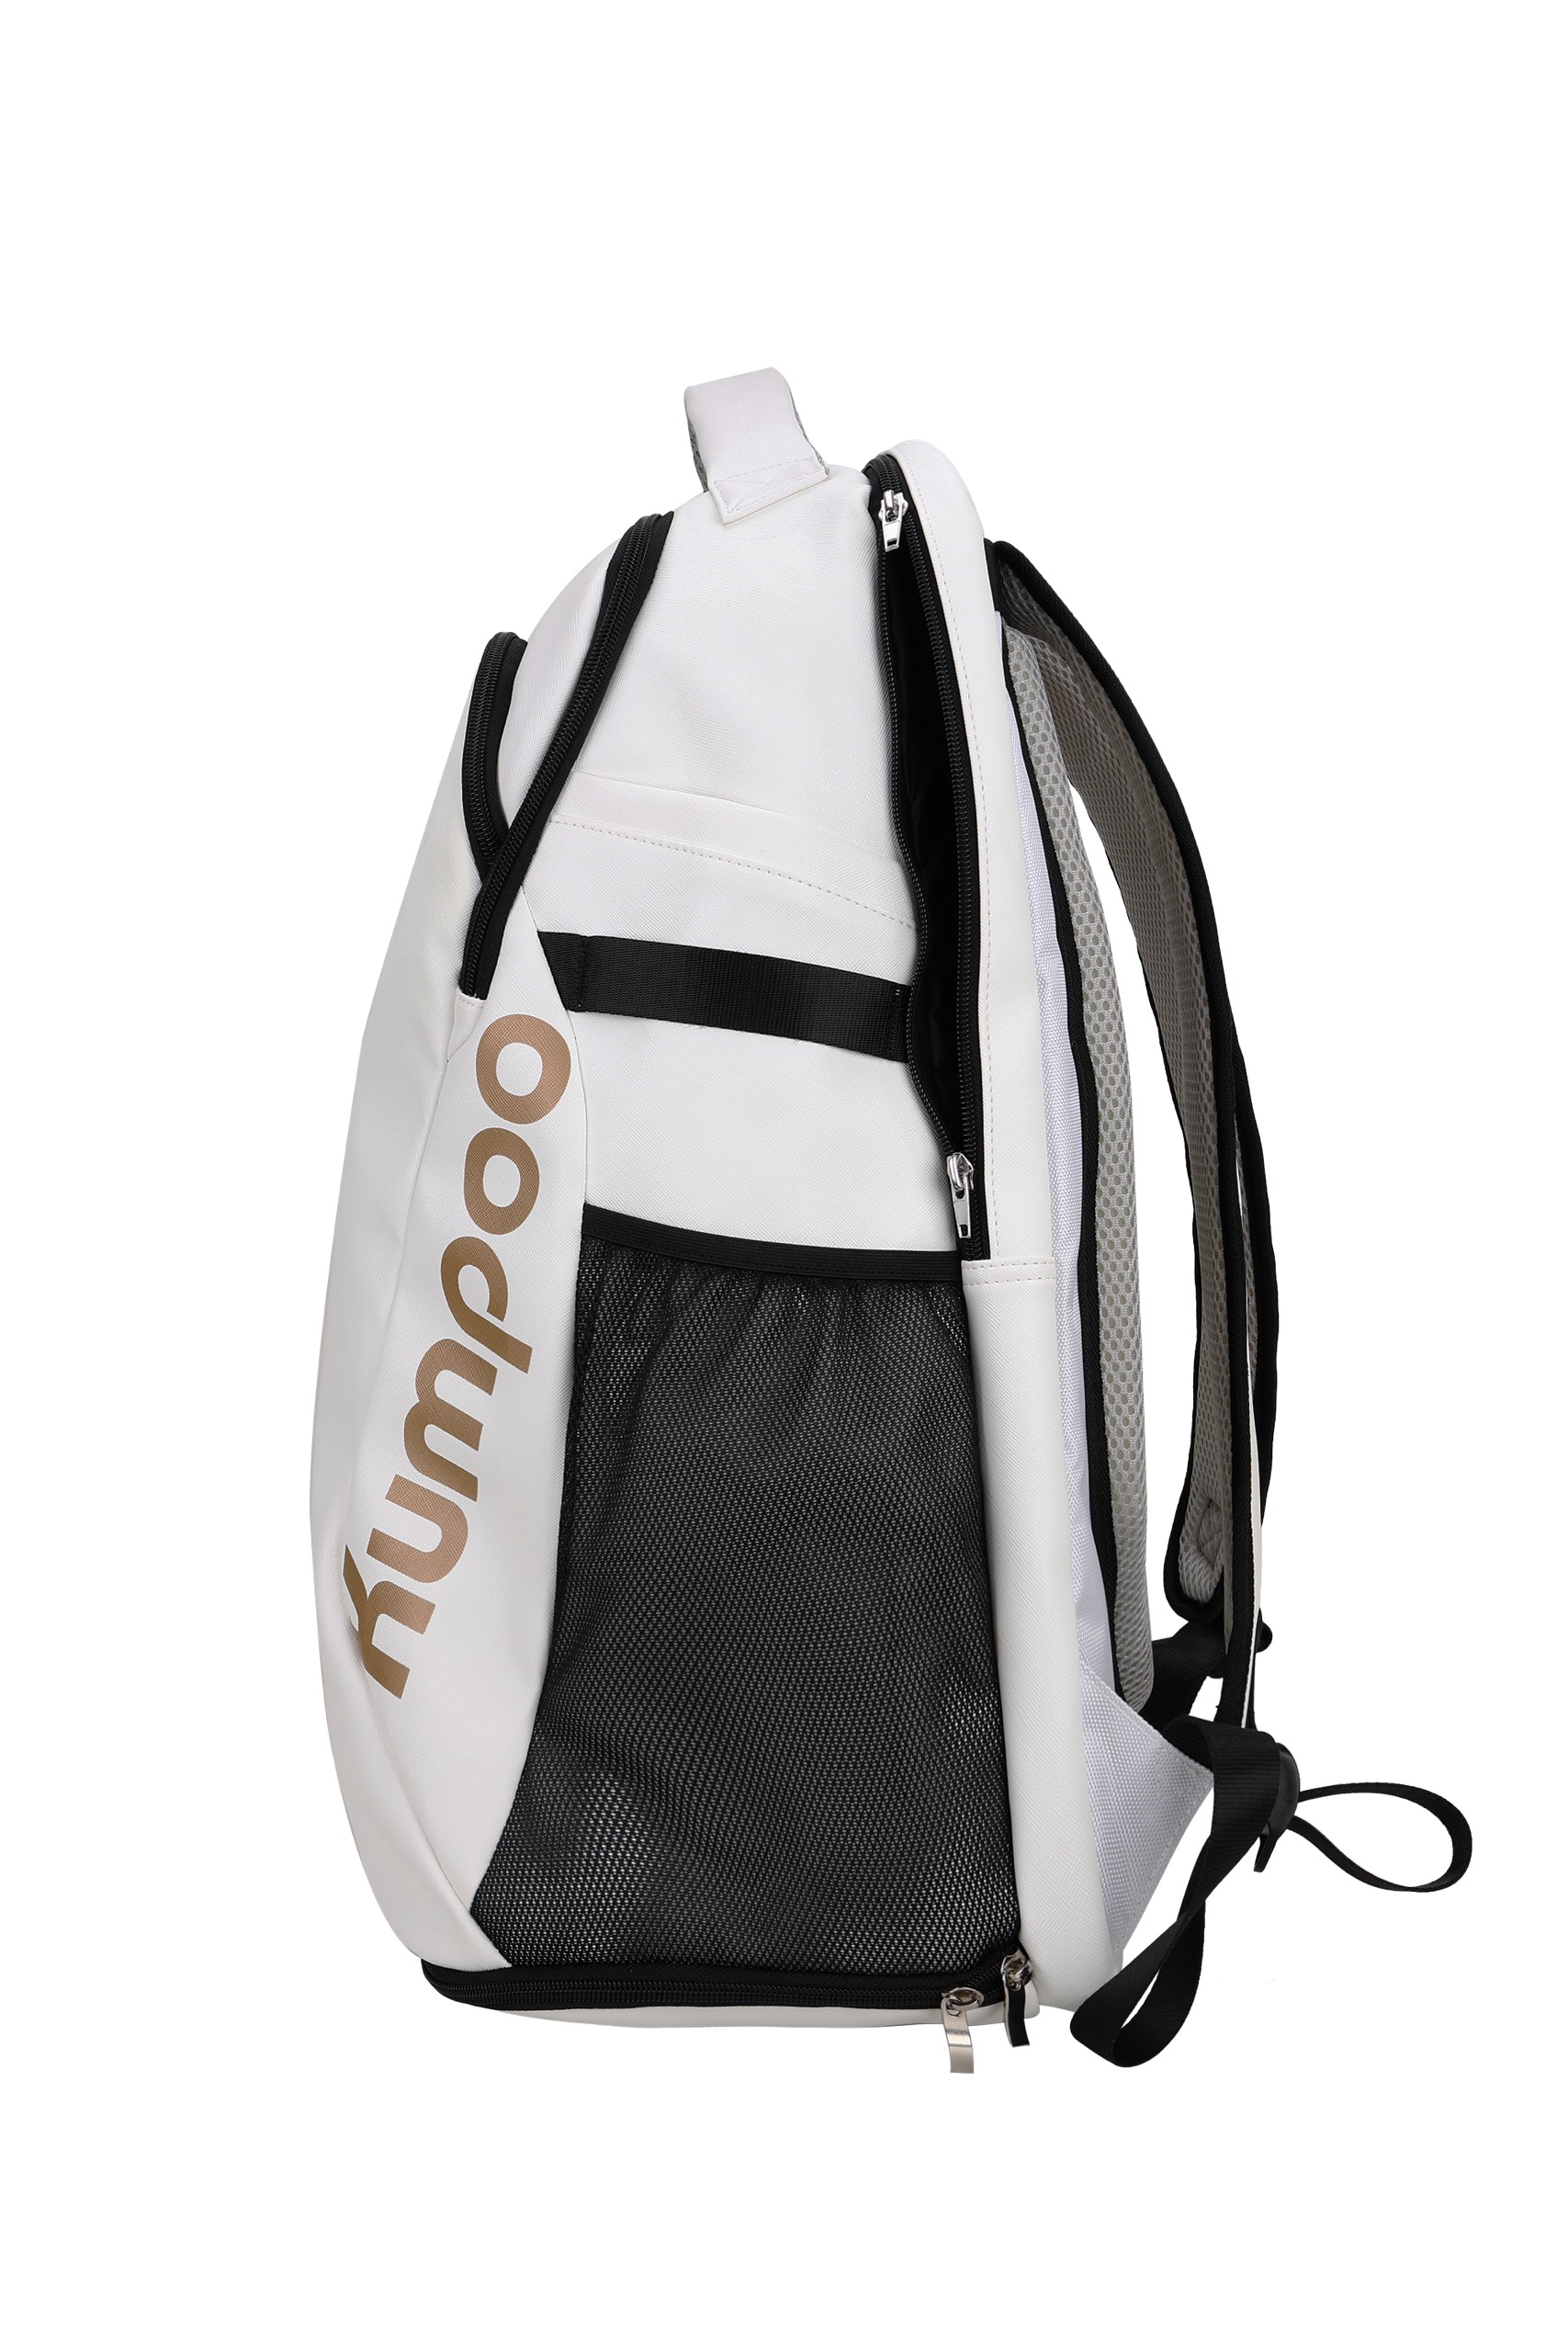 Balo cầu lông Kumpoo, túi đựng vợt Kumpoo cao cấp KB127